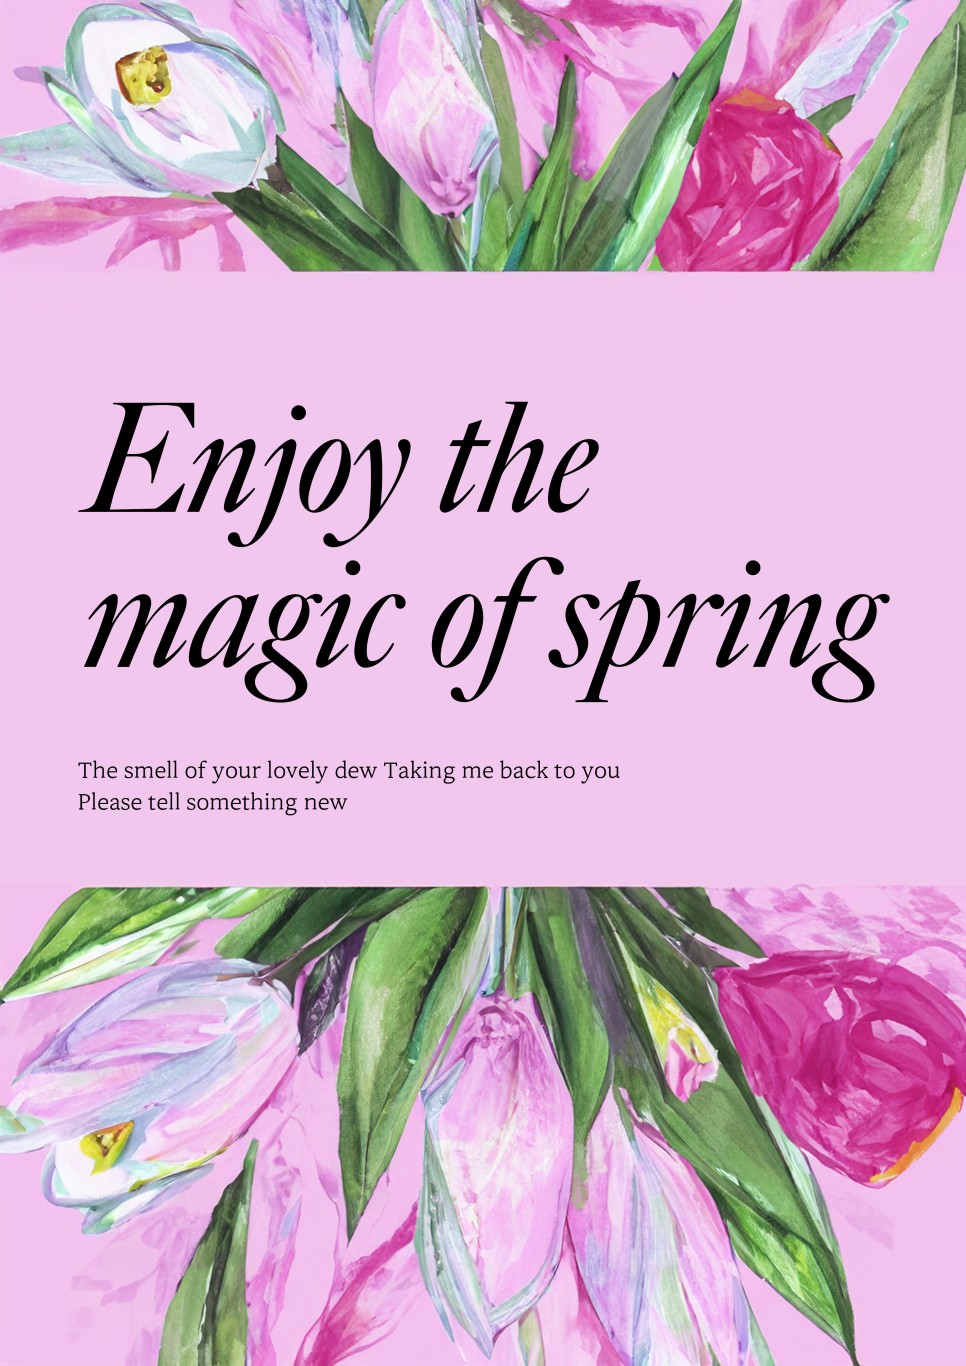 포토샵 AI 명령어로 홍보 포스터 만들기 (꽃, 봄 이미지 활용)